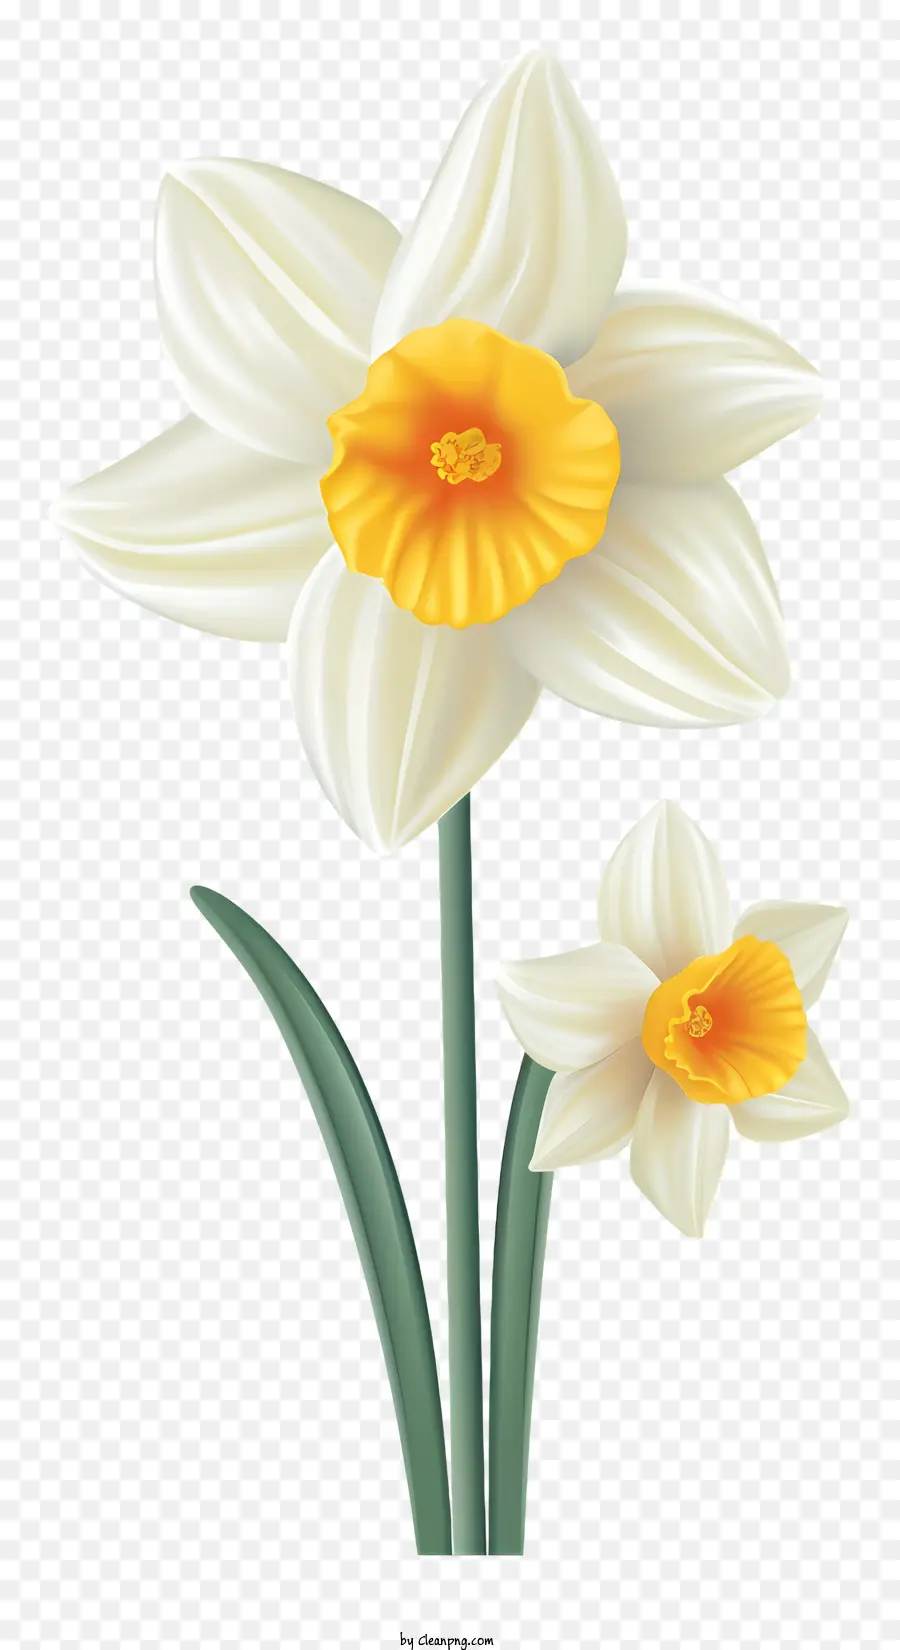 gelbe Blume - Blühende weiße Blume mit gelbem Mittelpunkt und grünem Stiel